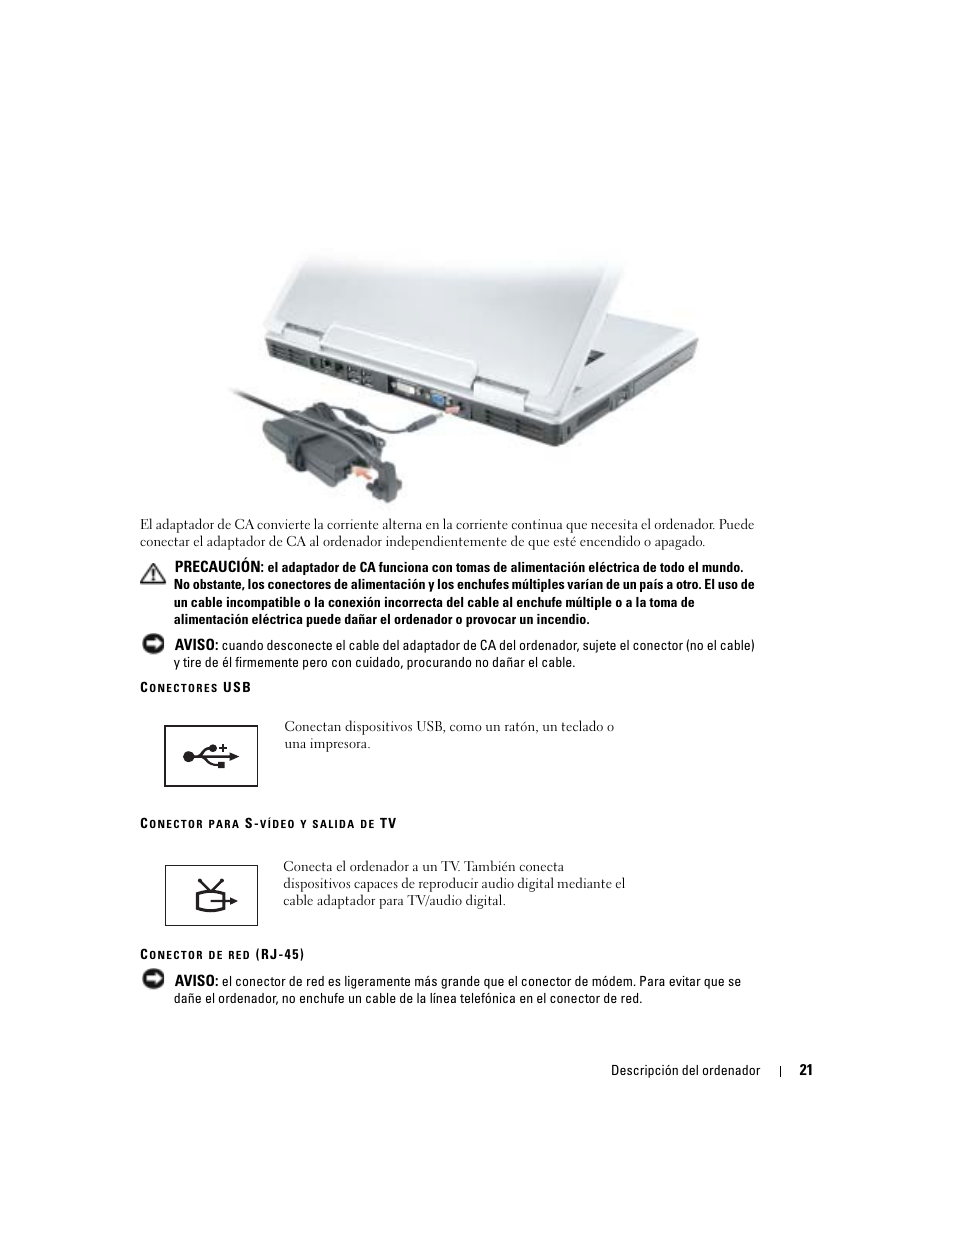 Dell Inspiron 9300 Manual del usuario | Página 21 / 136